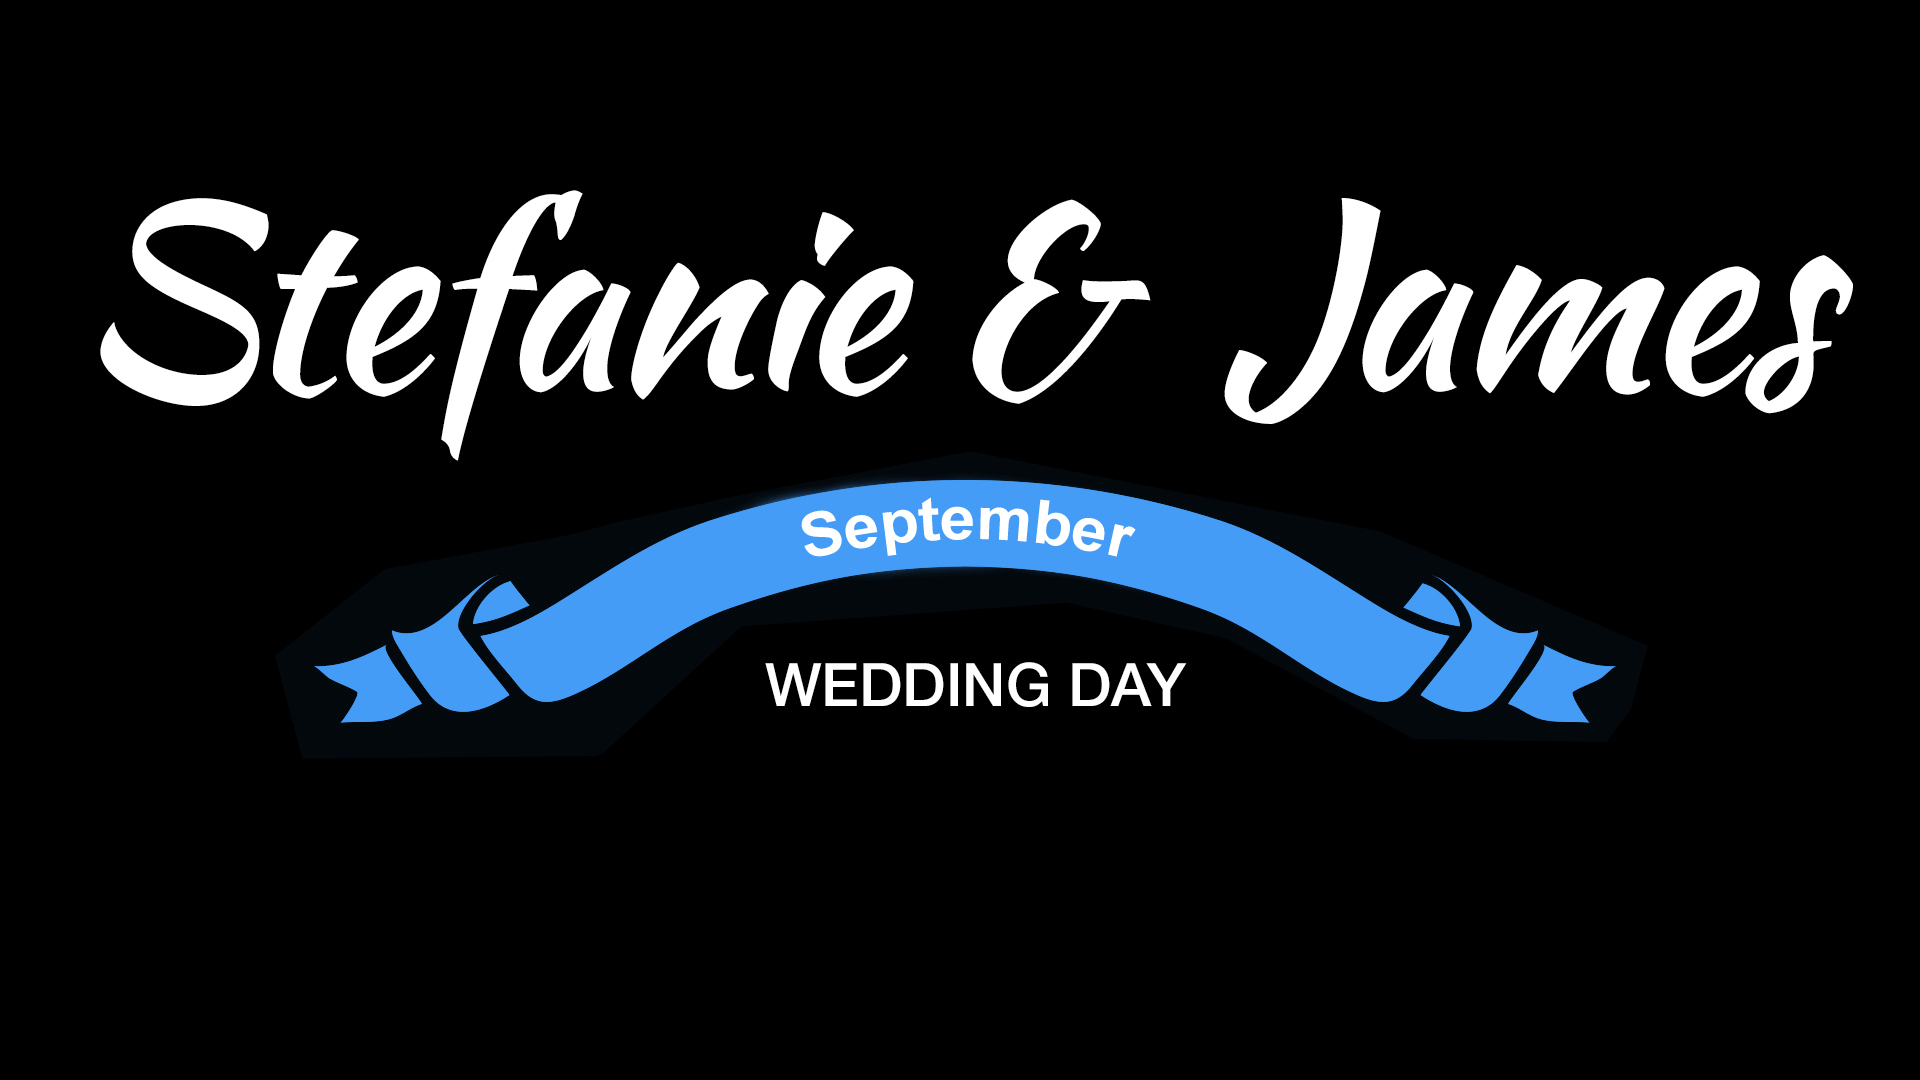 Stefanie & James Wedding